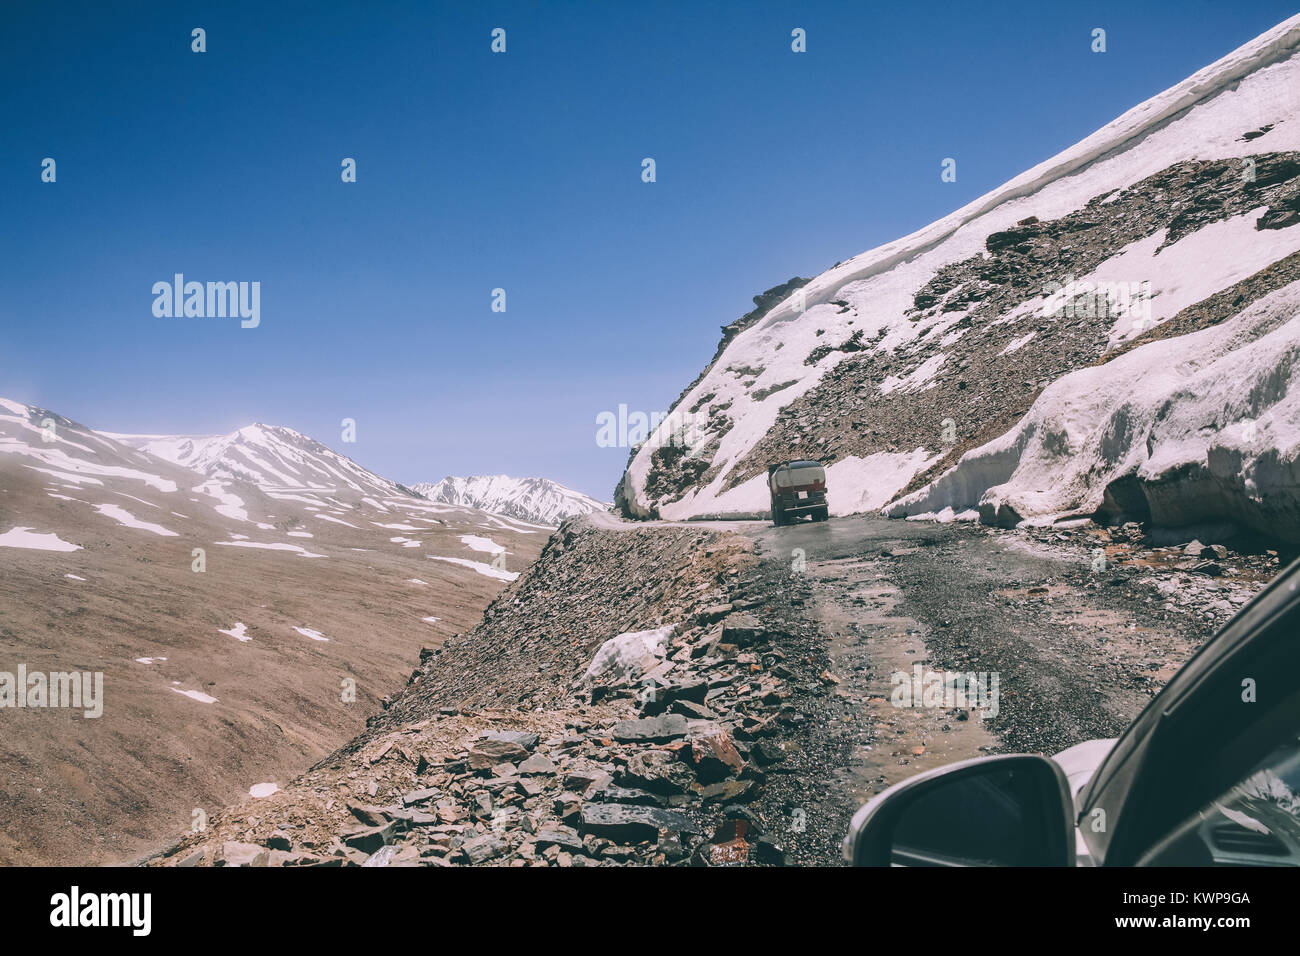 Beau paysage et route de montagne dans la région du Ladakh, Himalaya Indien Banque D'Images